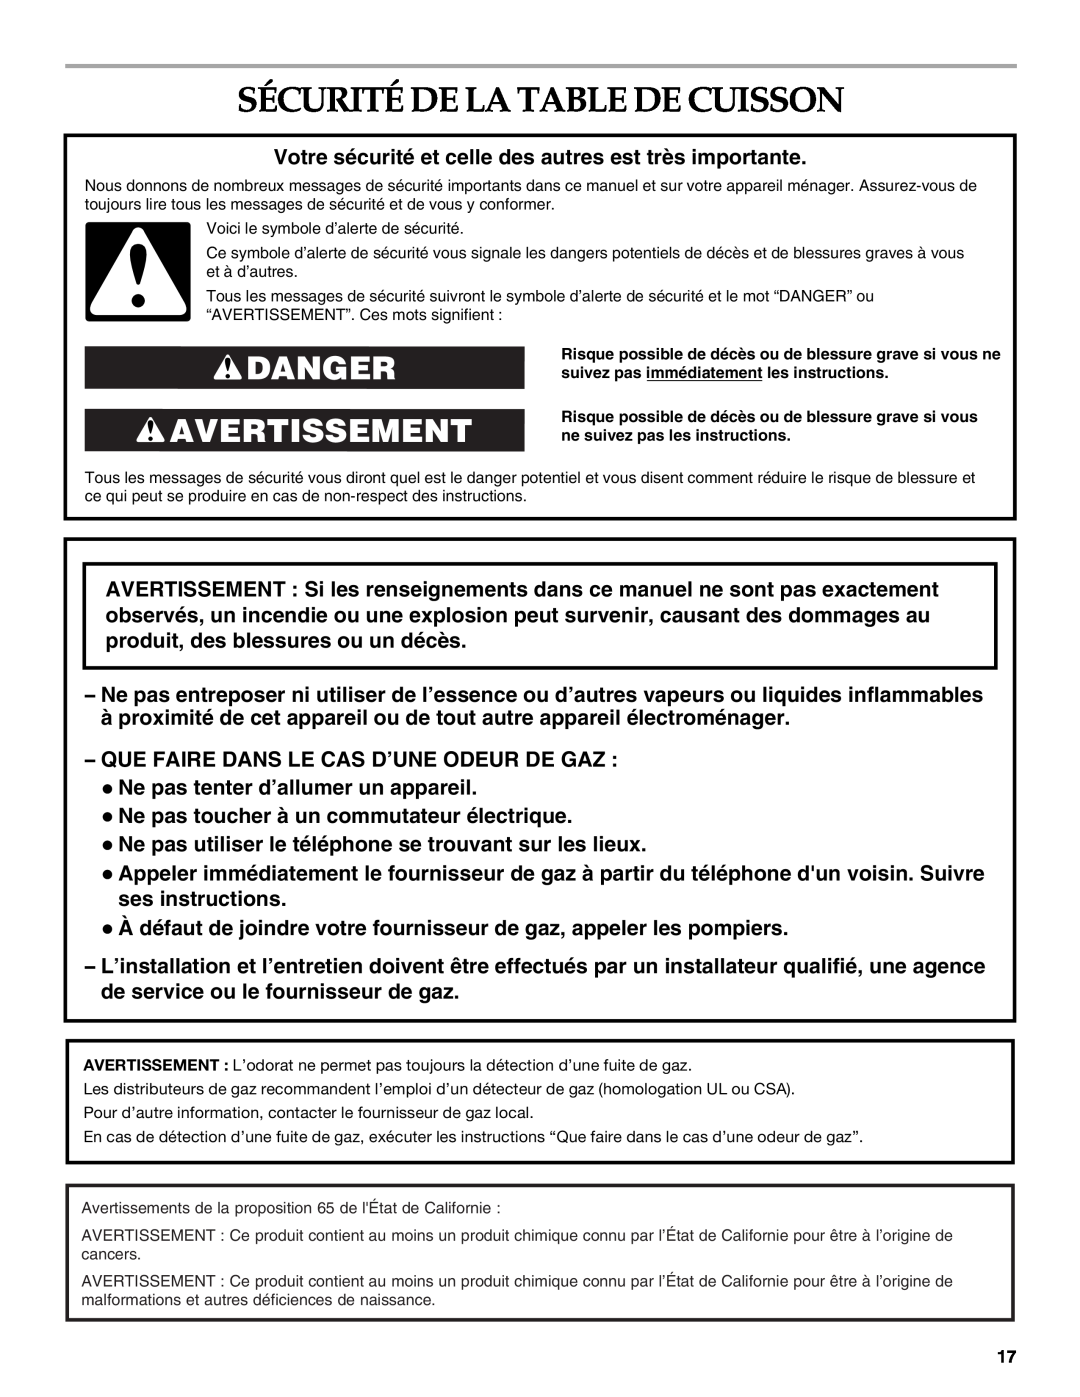 KitchenAid KGCU483VSS manual Sécurité De La Table De Cuisson, Danger Avertissement 